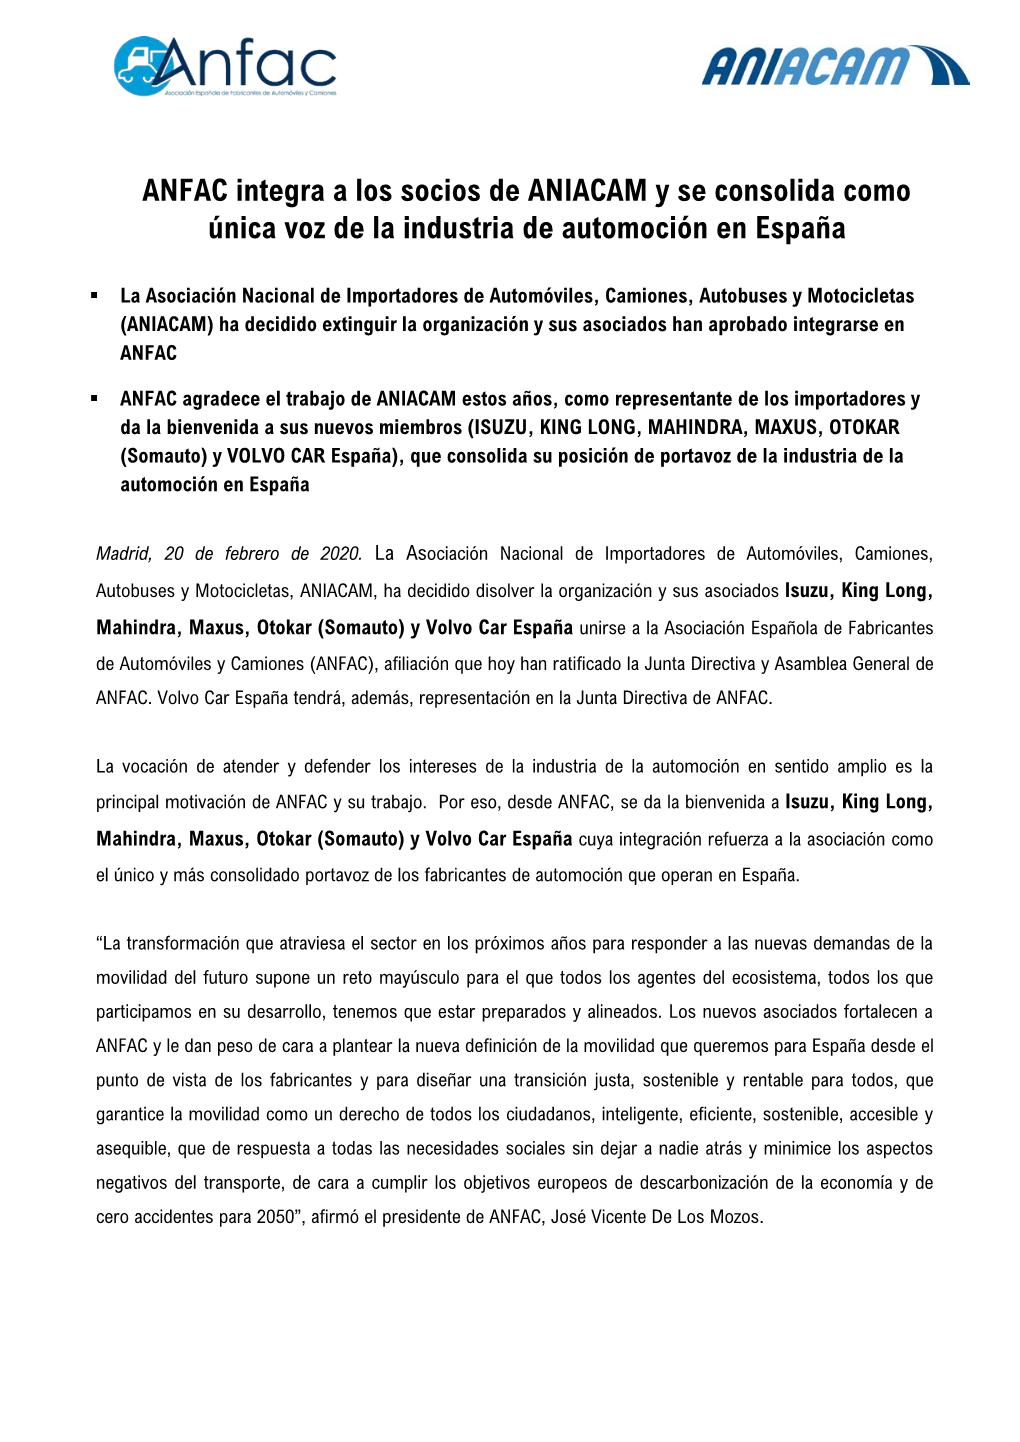 ANFAC Integra a Los Socios De ANIACAM Y Se Consolida Como Única Voz De La Industria De Automoción En España